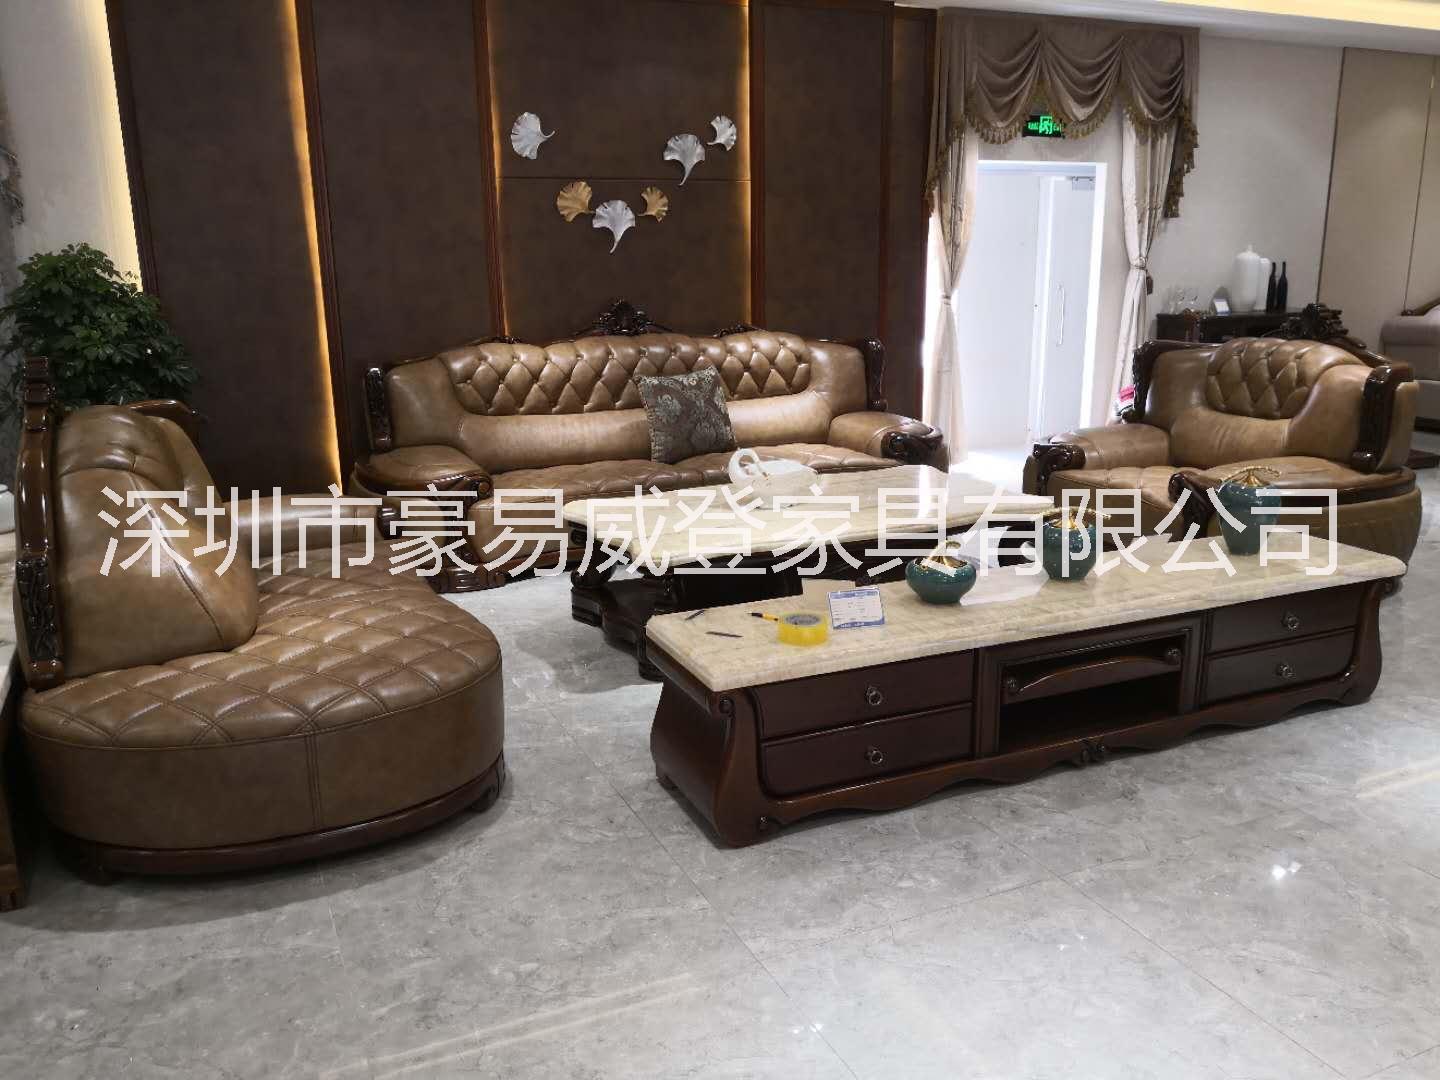 深圳高档沙发价格   深圳高档沙发品牌   深圳豪华沙发供应商   高档沙发